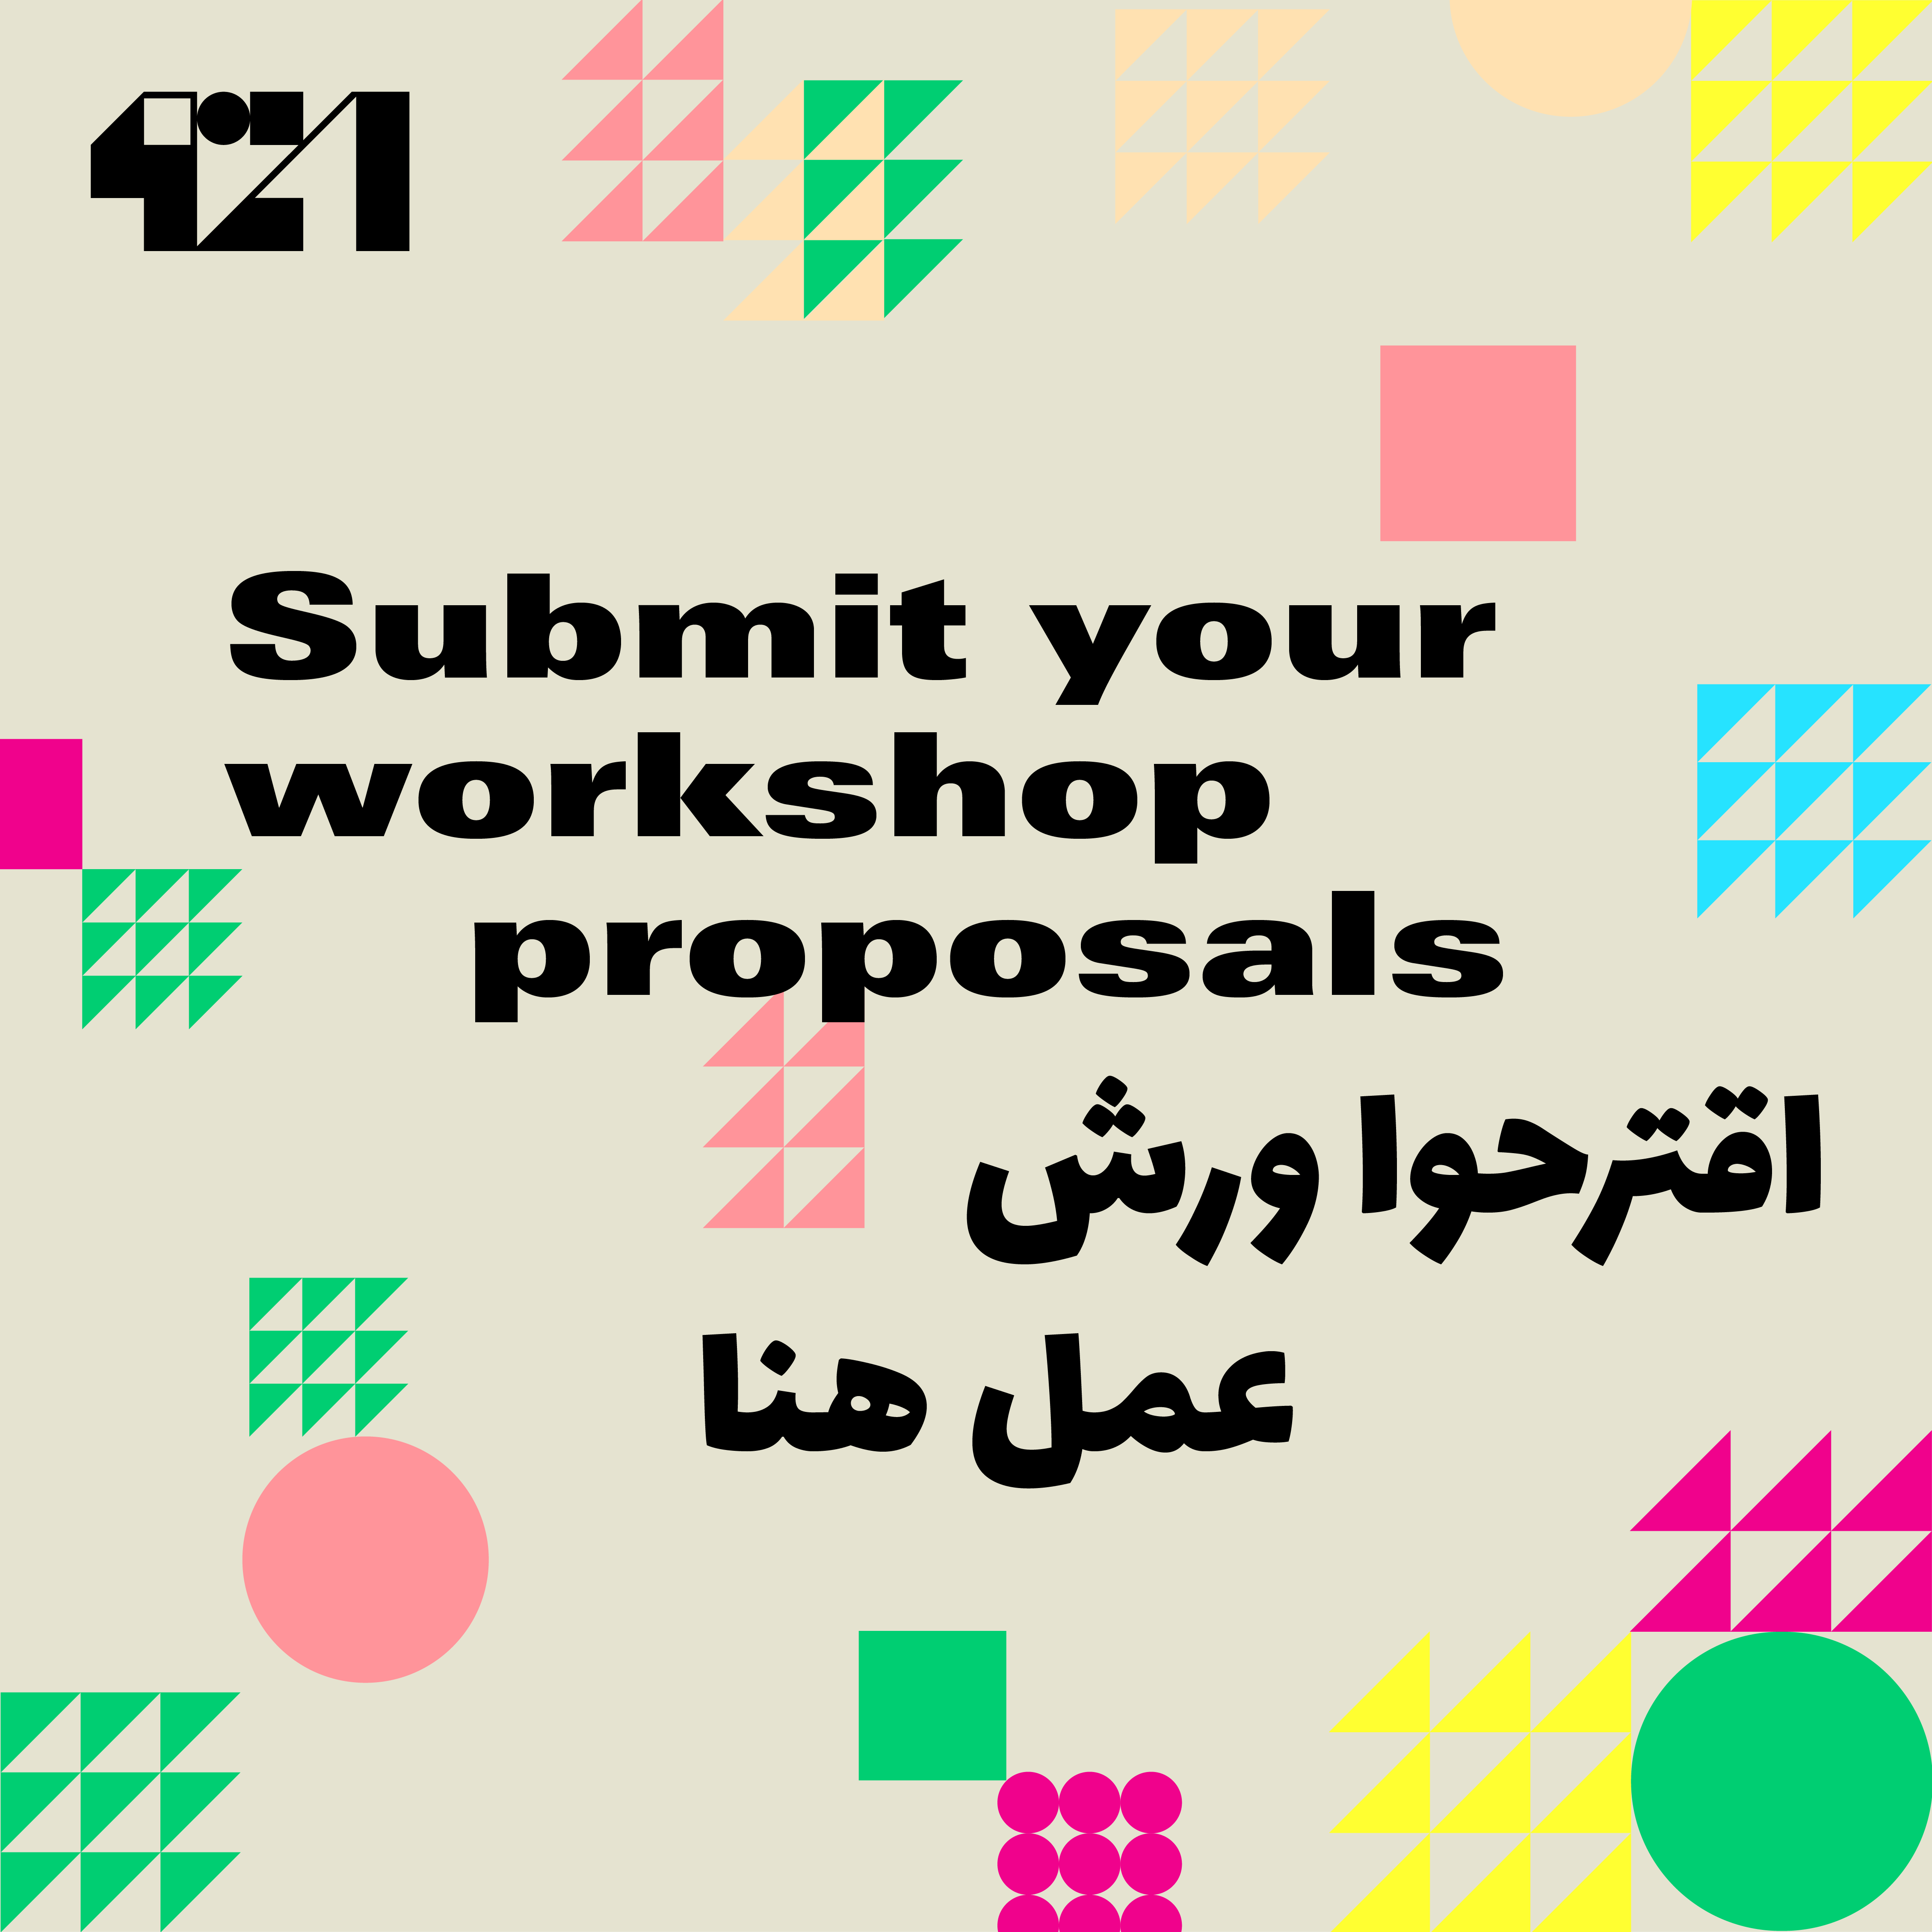 submit-your-workshop-proposals-01-6419d7e6c9c5c.png (original)